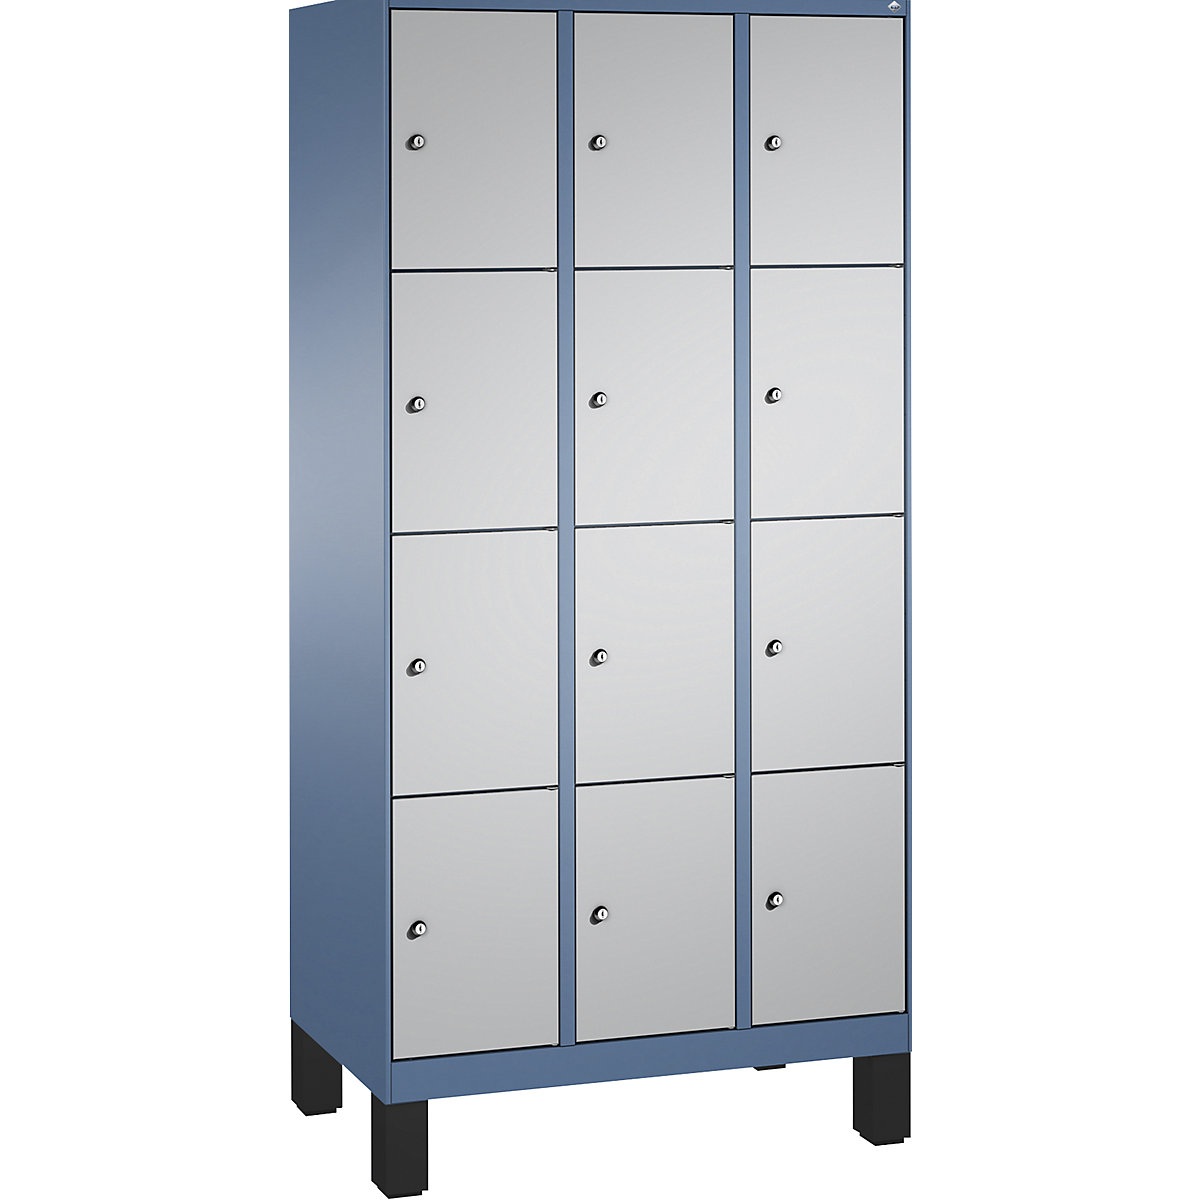 Armoire à casiers sur pieds EVOLO – C+P, 3 compartiments, 4 casiers chacun, largeur compartiments 300 mm, bleu distant / aluminium-12